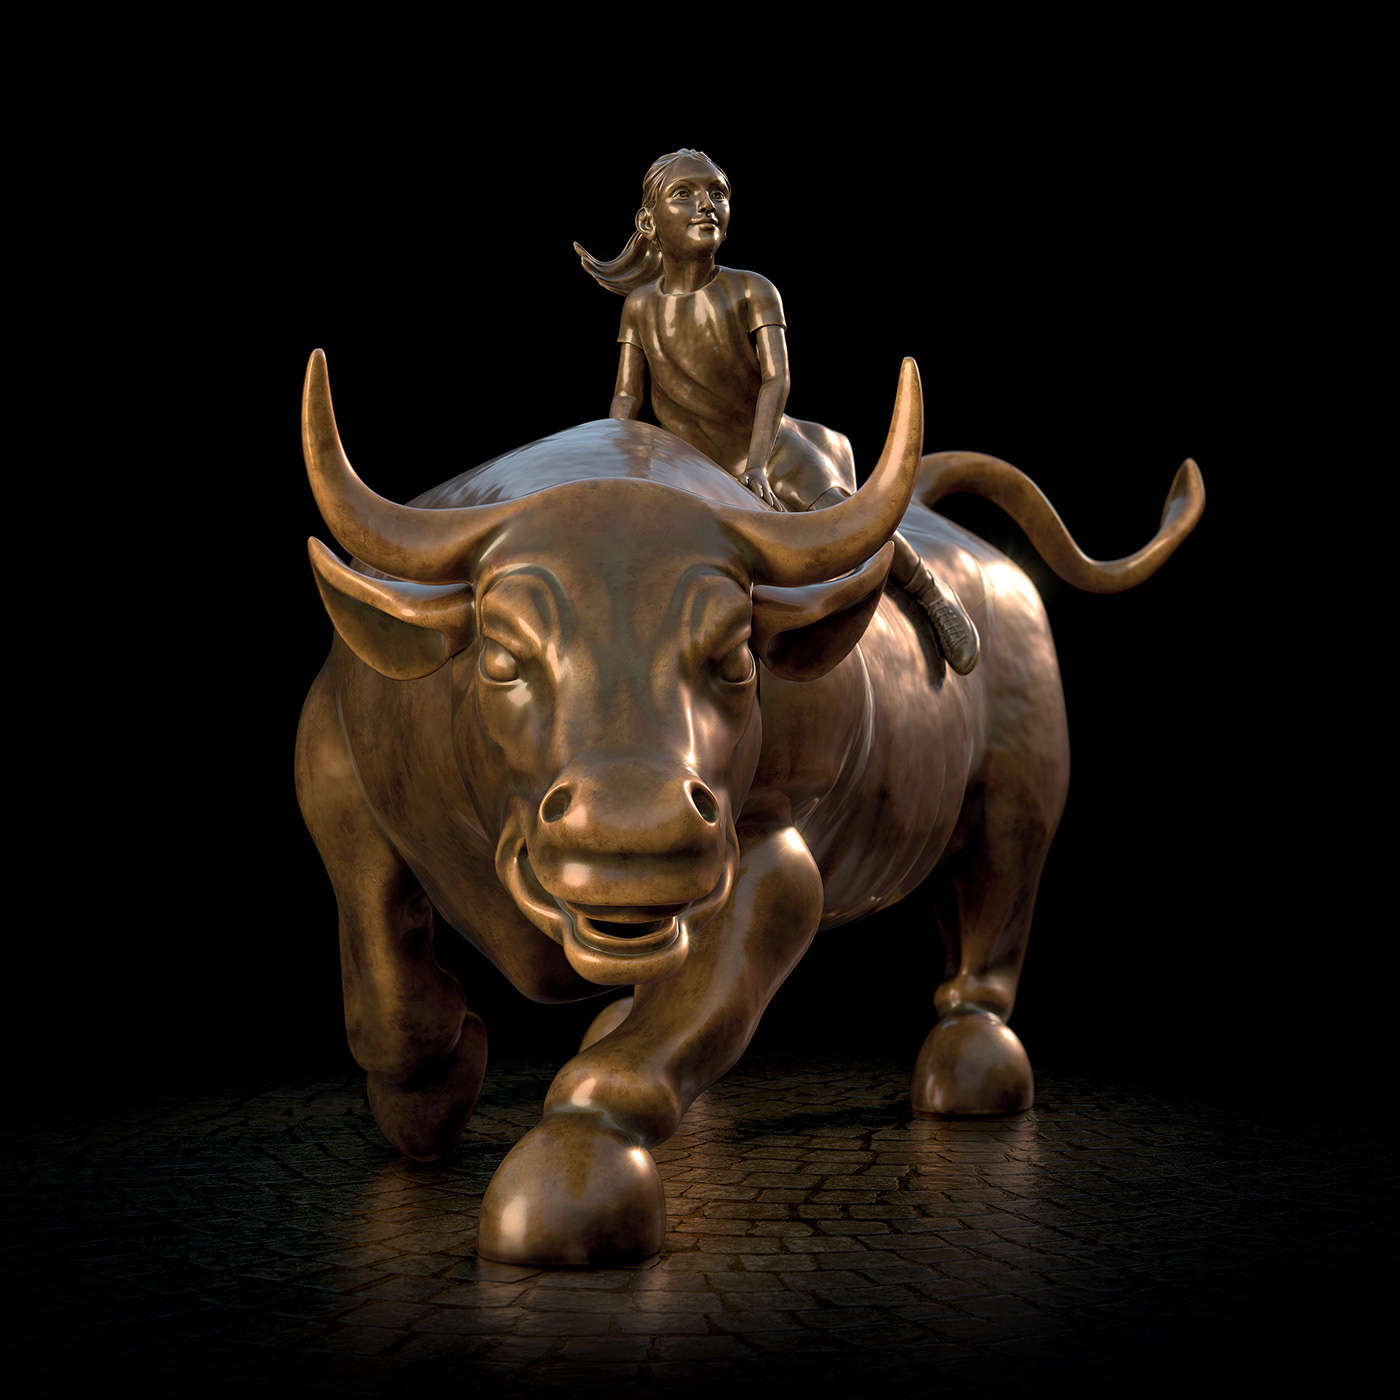 charging bull bull fearless girl Sculpt animal metal 3D Render